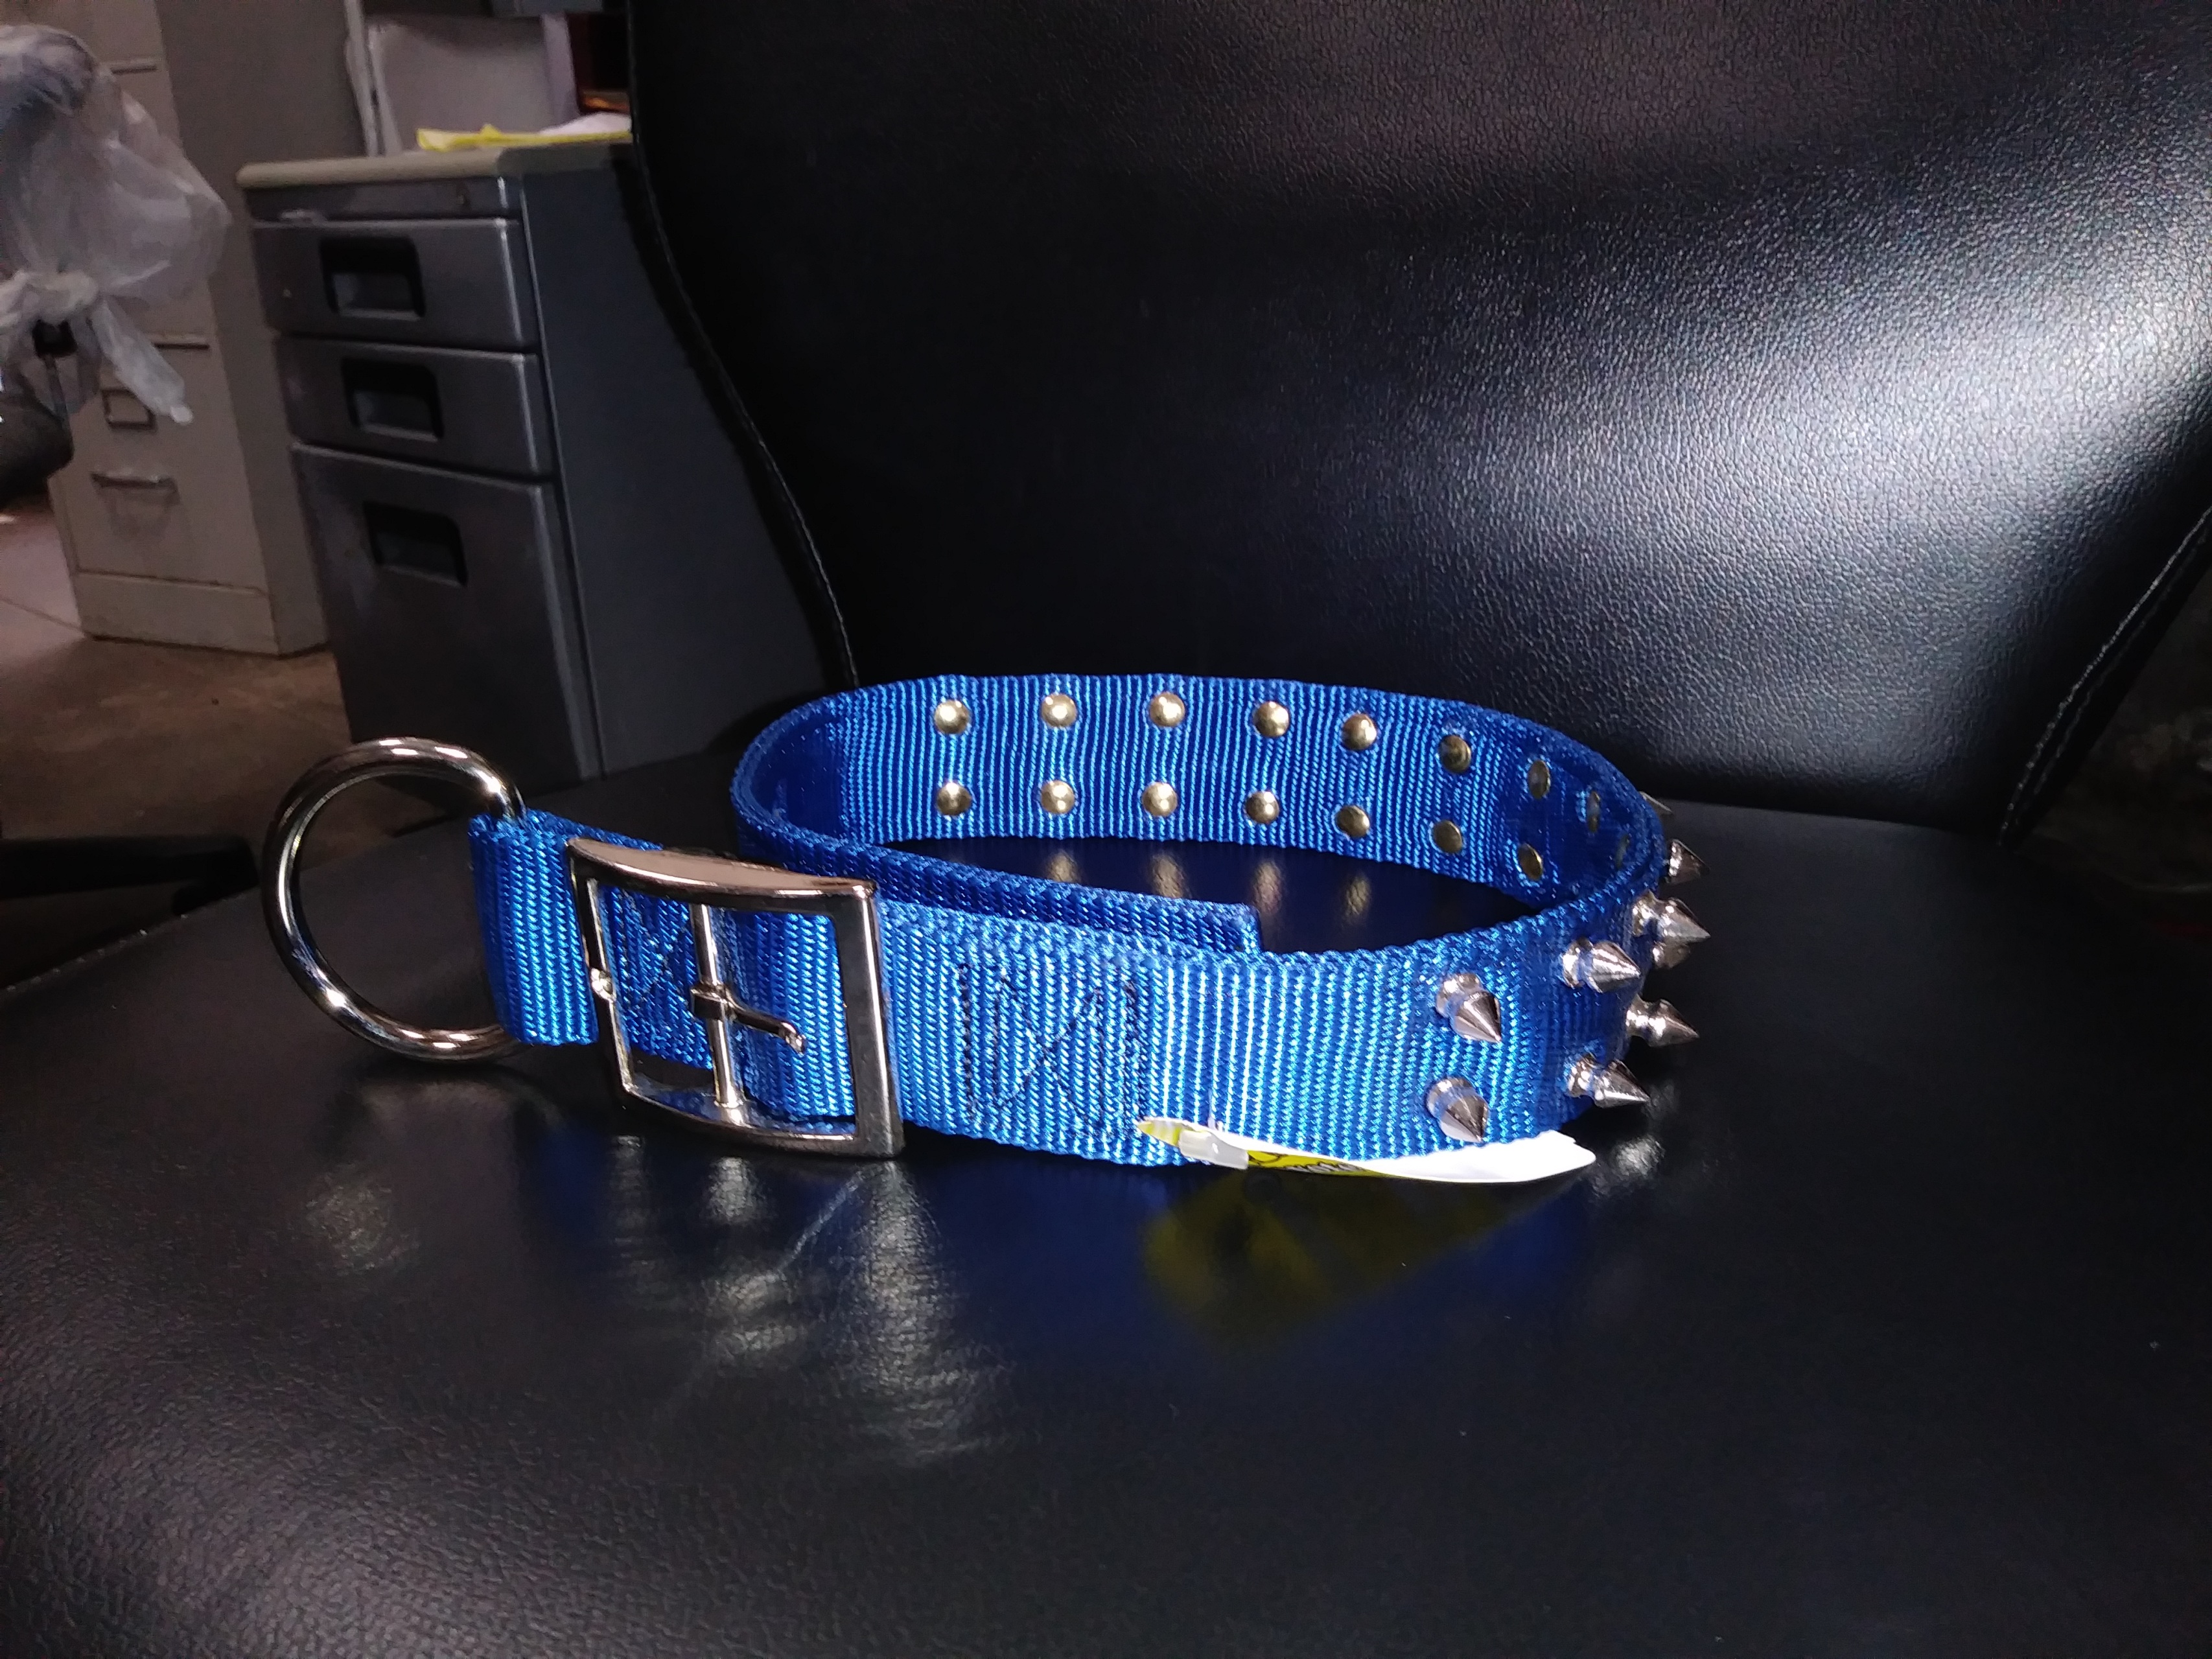 blue studded dog collar